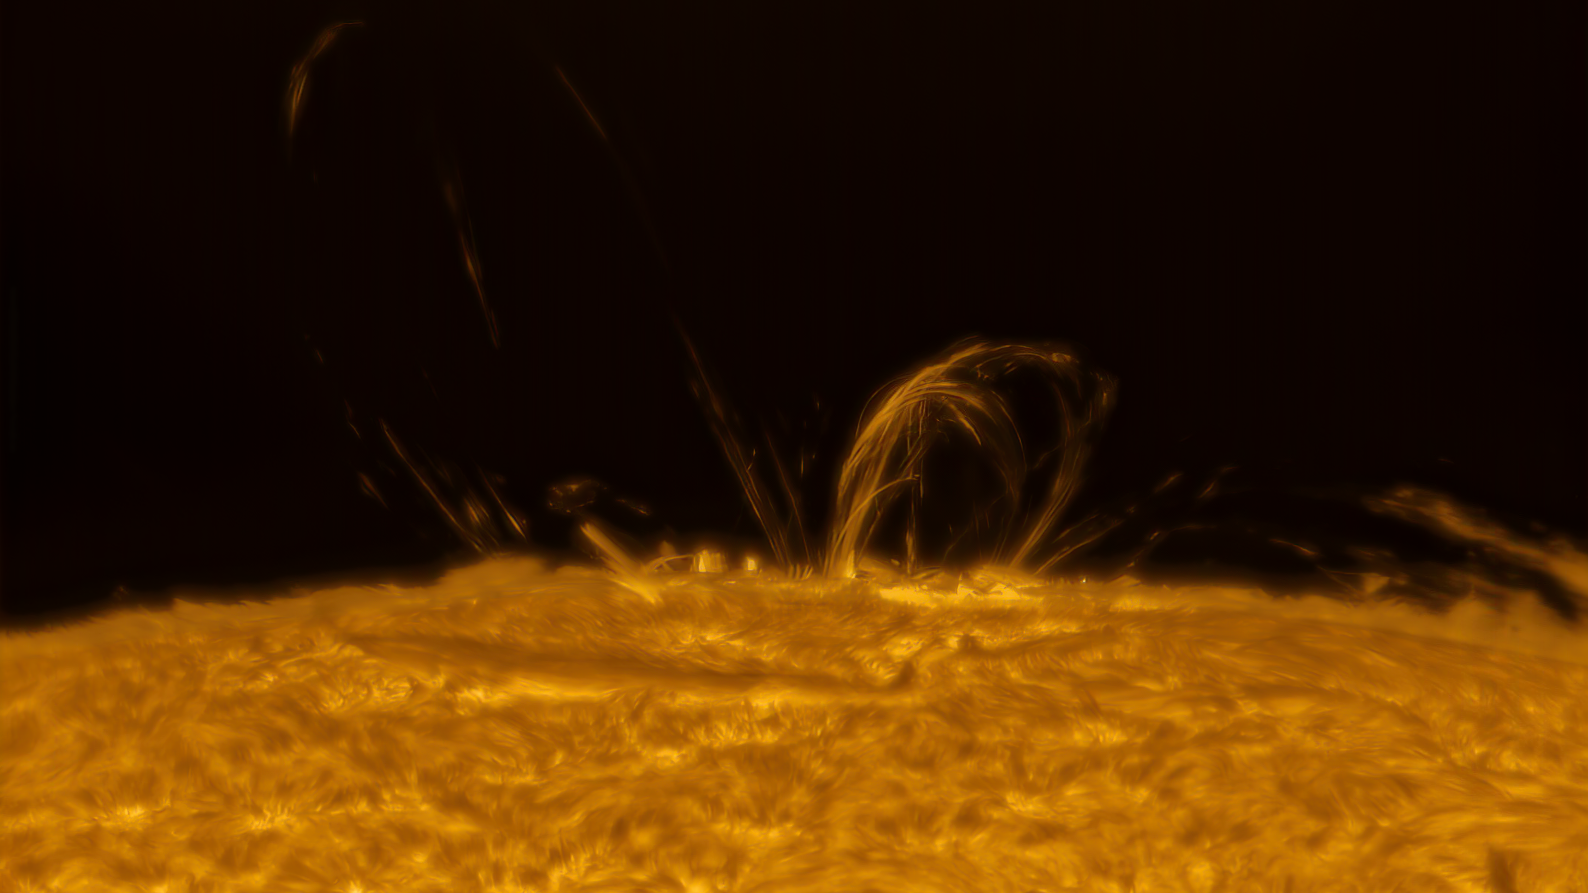 Ein letztes Bild von der Sonnenfleckengruppe, die uns die schönen Polarlichter beschert hatte